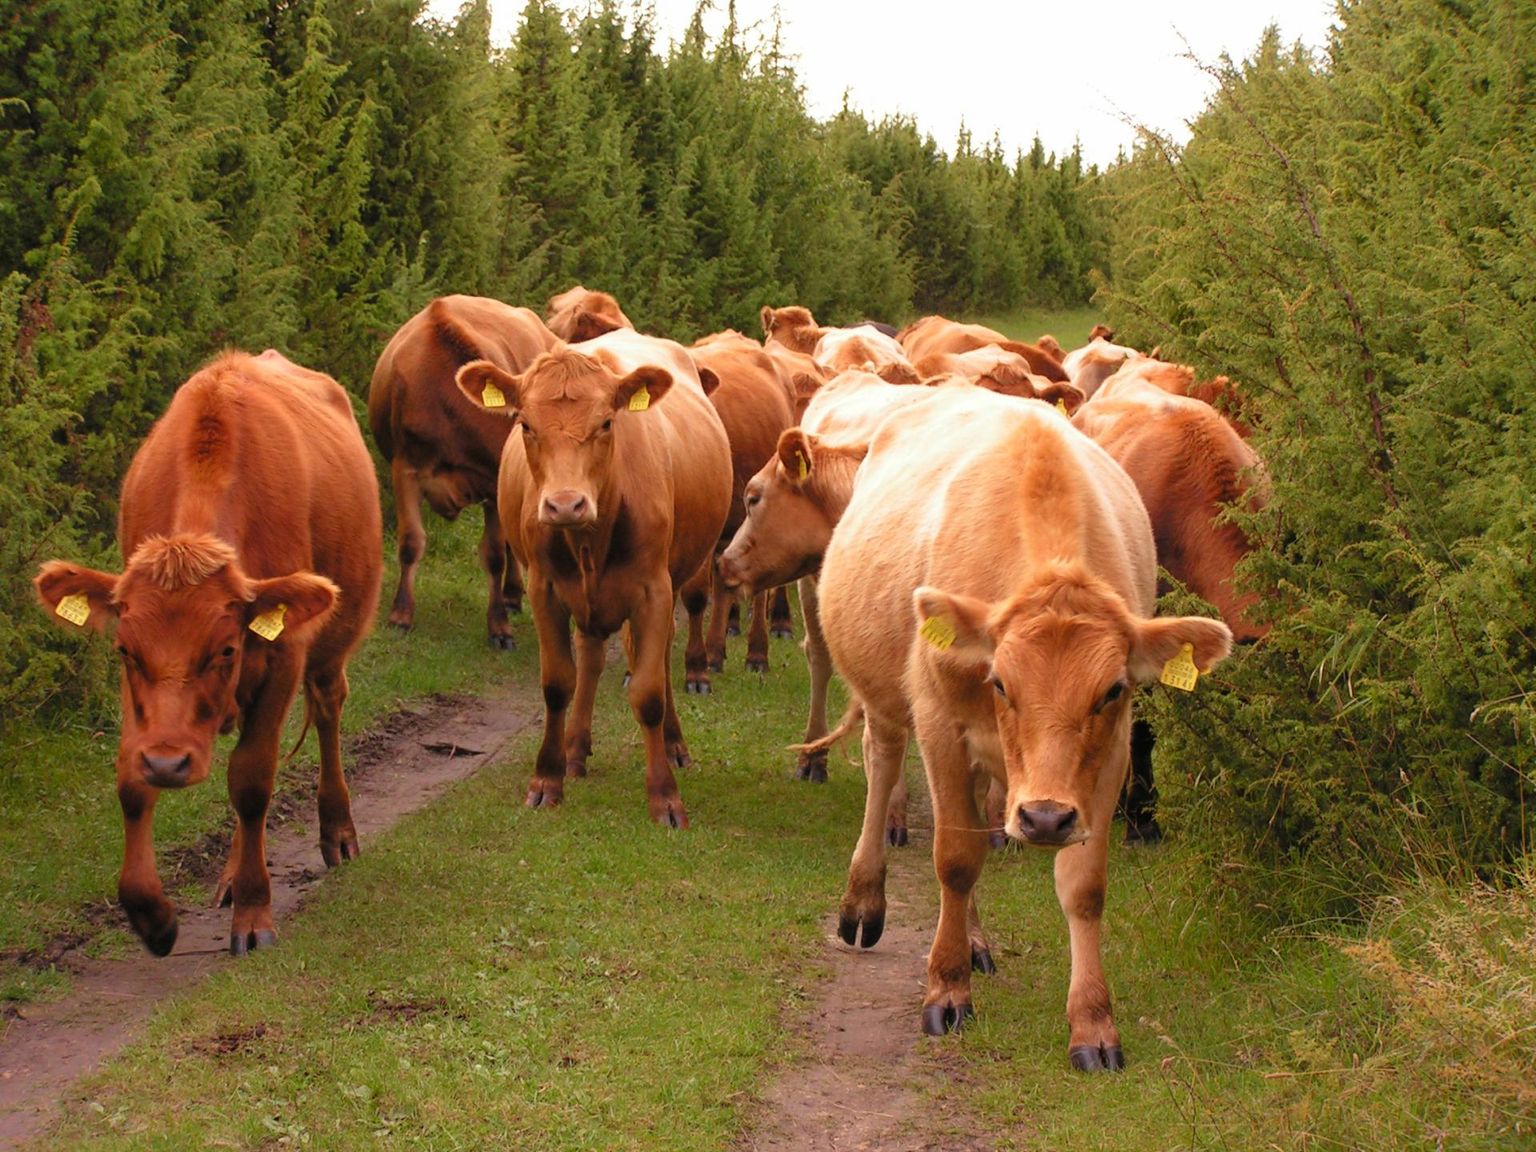 Eesti nudipäised maatõugu veised Matsalu kadastike vahel. Looduskaitse on alati püüdnud loopealseid võimalikult avatutena hoia. Vahel on selleks lihtsalt kariloomi nappinud.